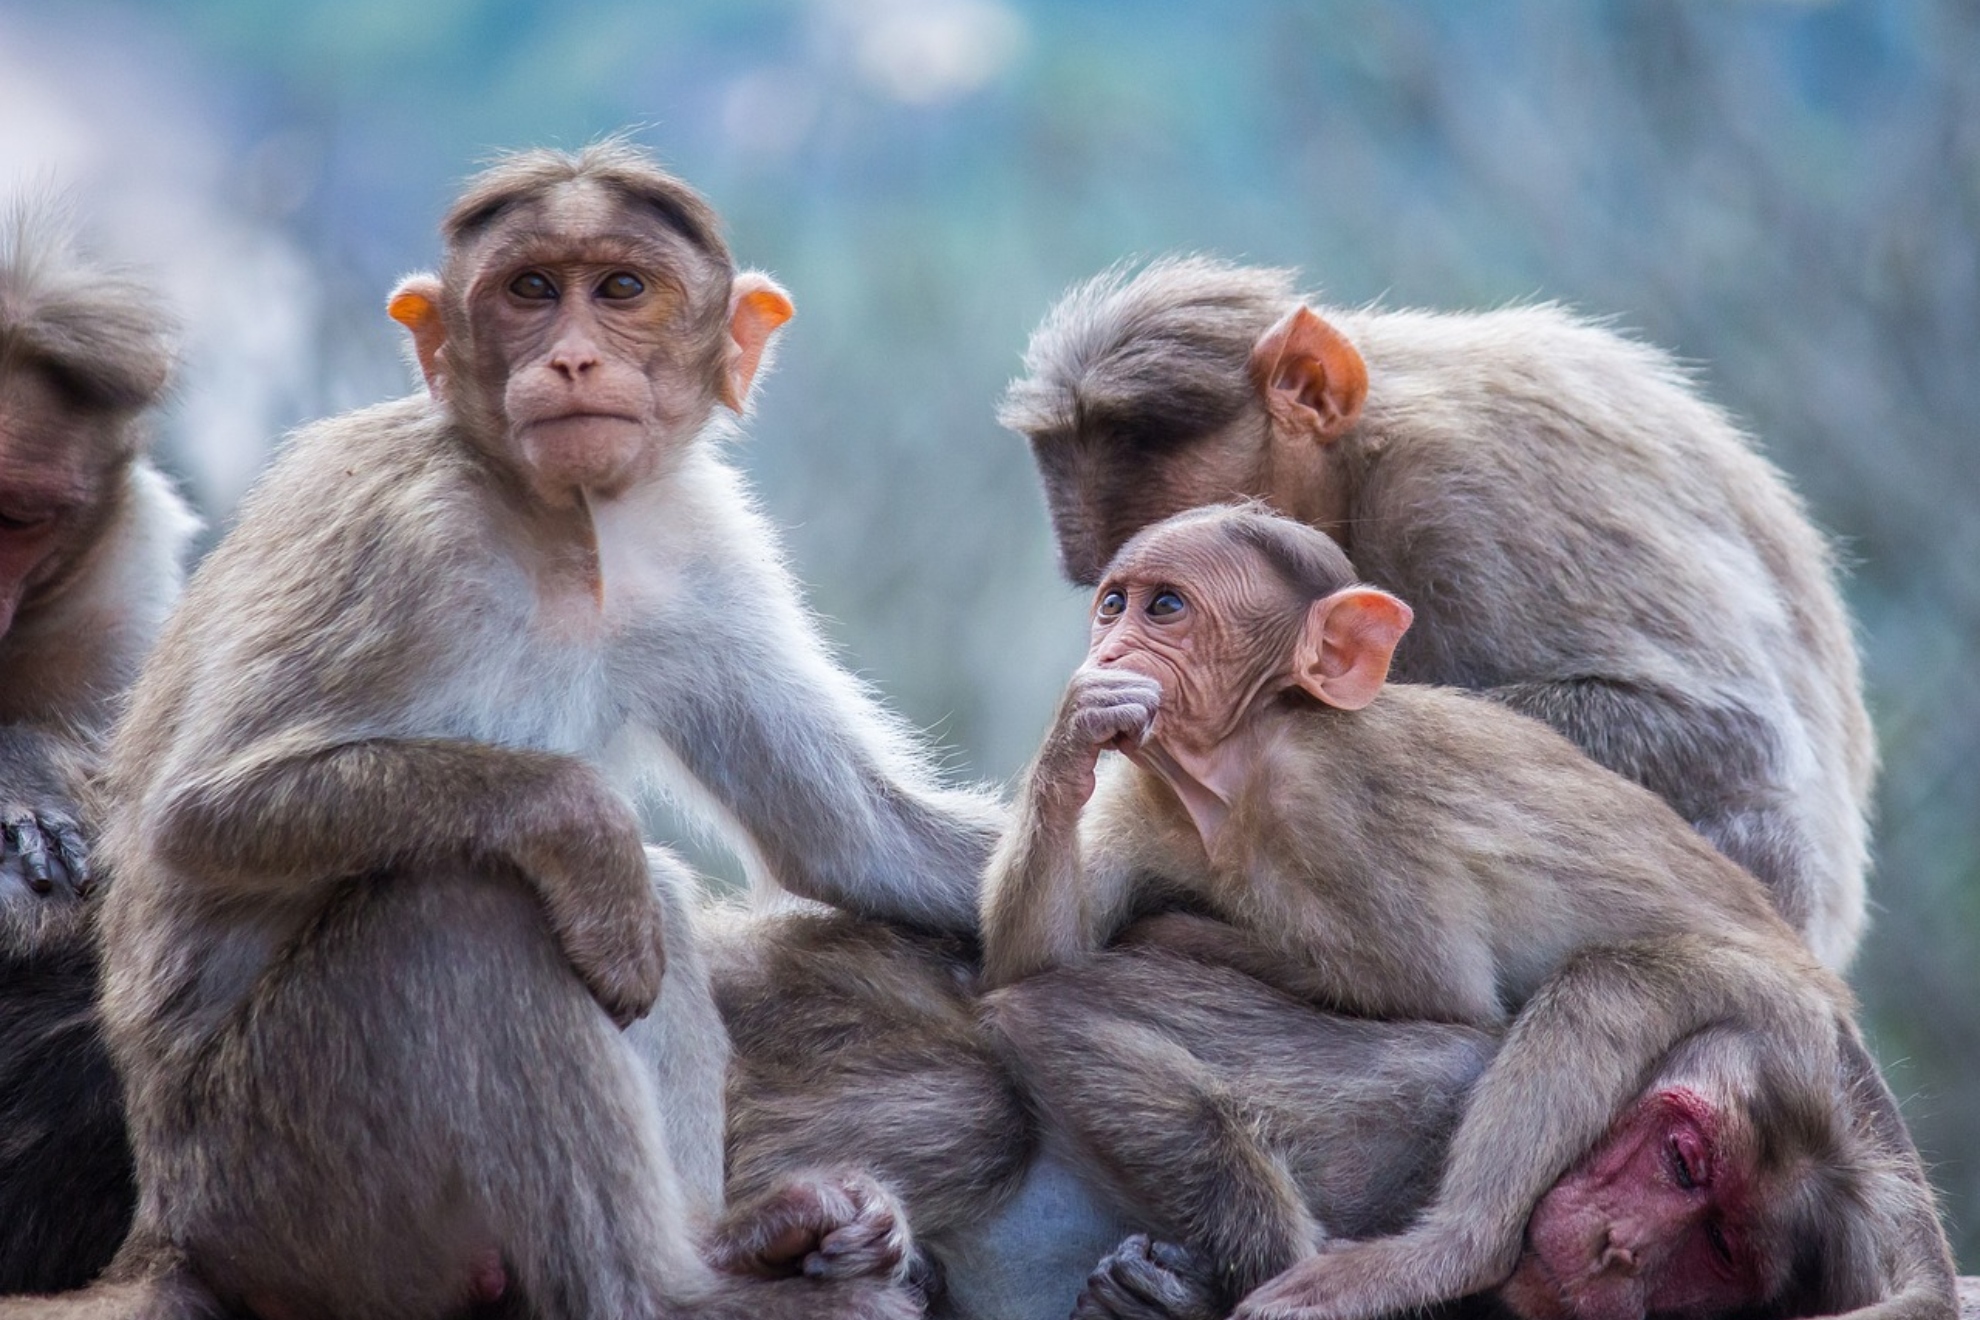 Several monkeys in a file image. PIXABAY